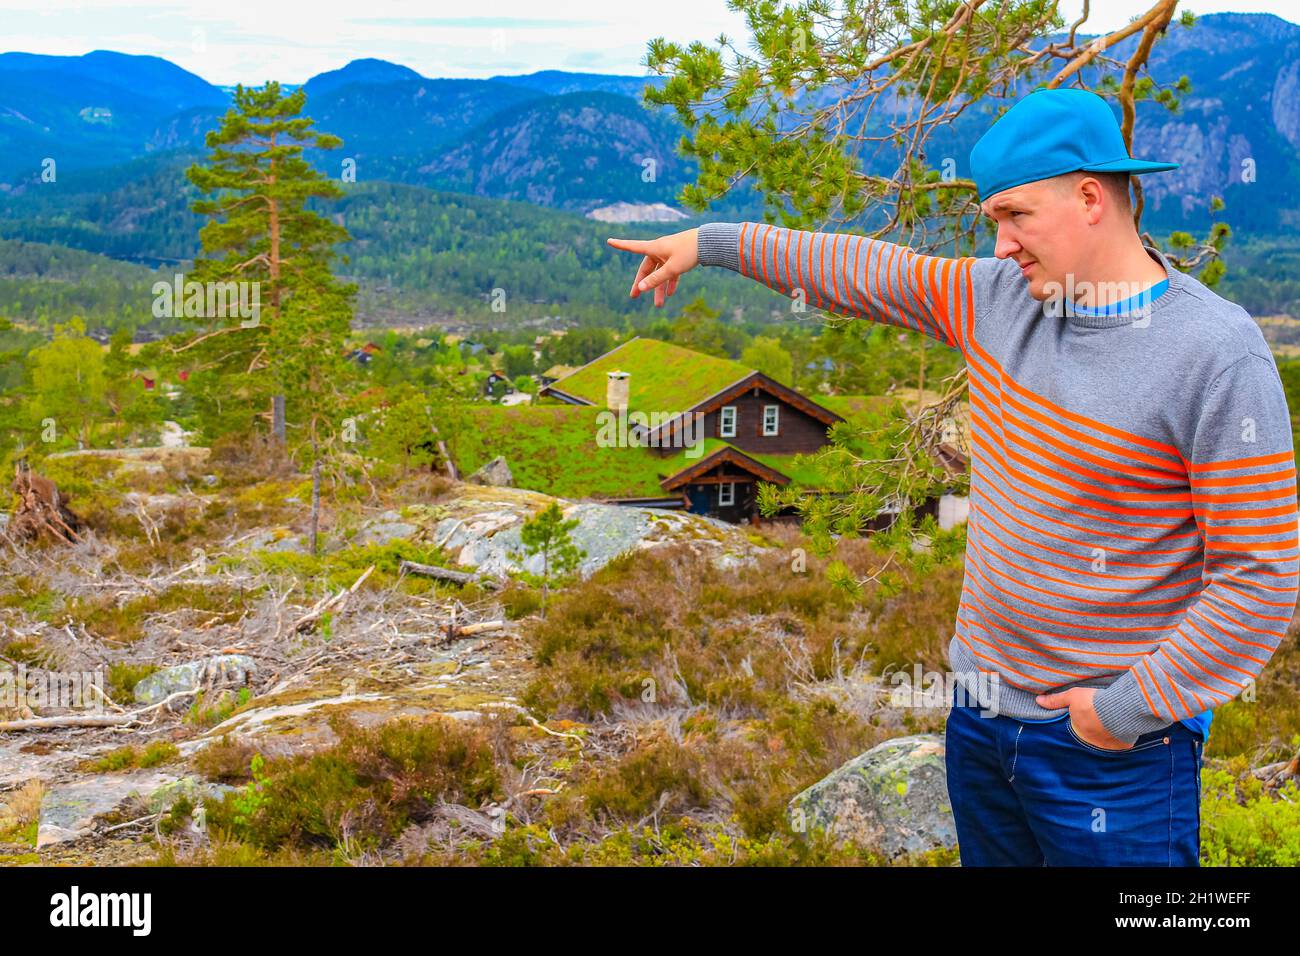 Un jeune randonneur montre le paysage des chalets de montagnes norvégiennes de Treungen à Nissedal Norvège. Banque D'Images